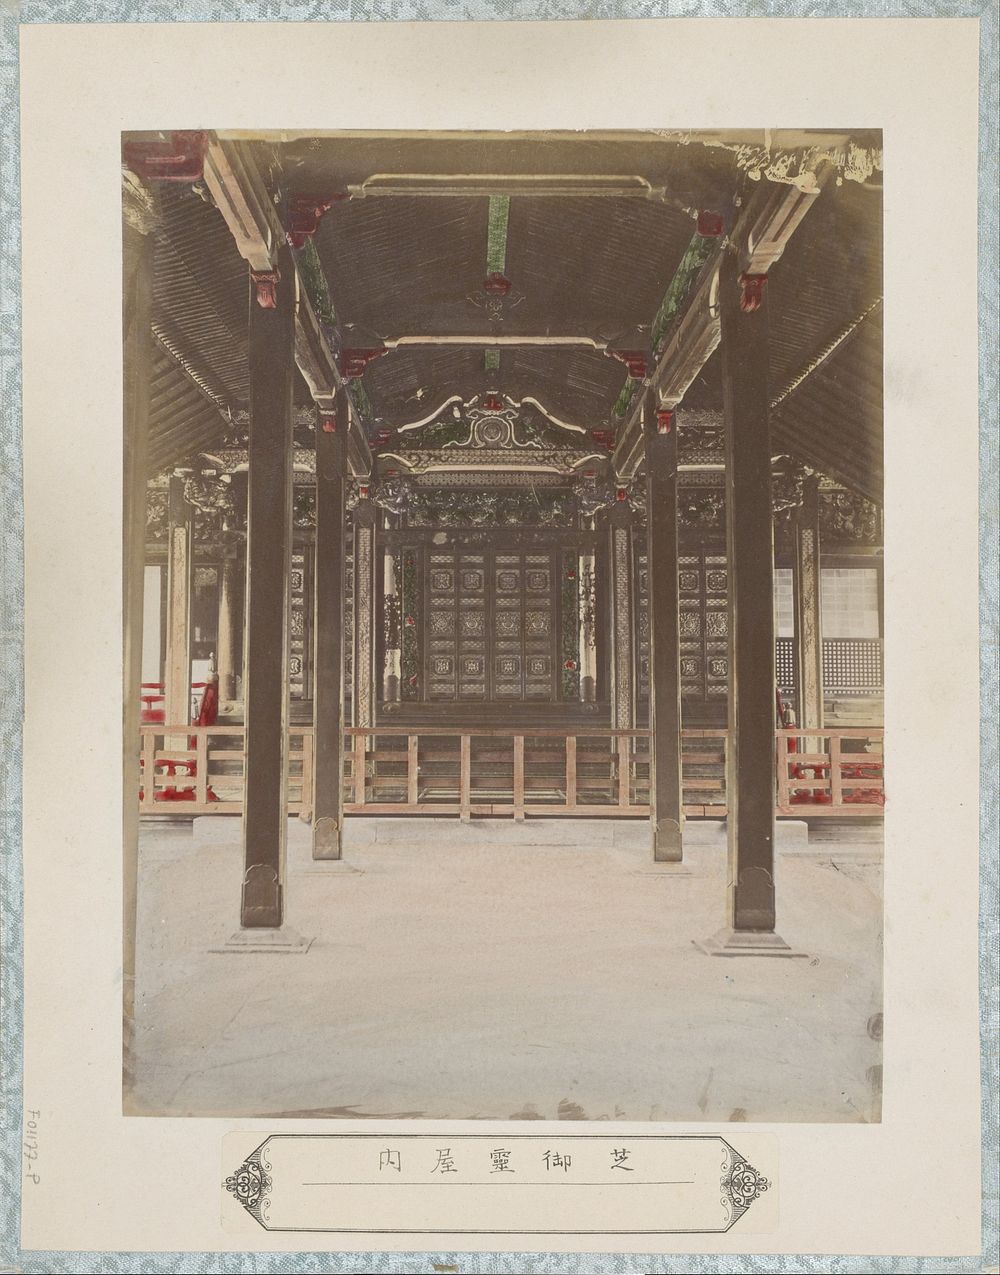 Interieur van een mausoleum in de Shiba-buurt in Tokyo (c. 1870 - c. 1900) by anonymous